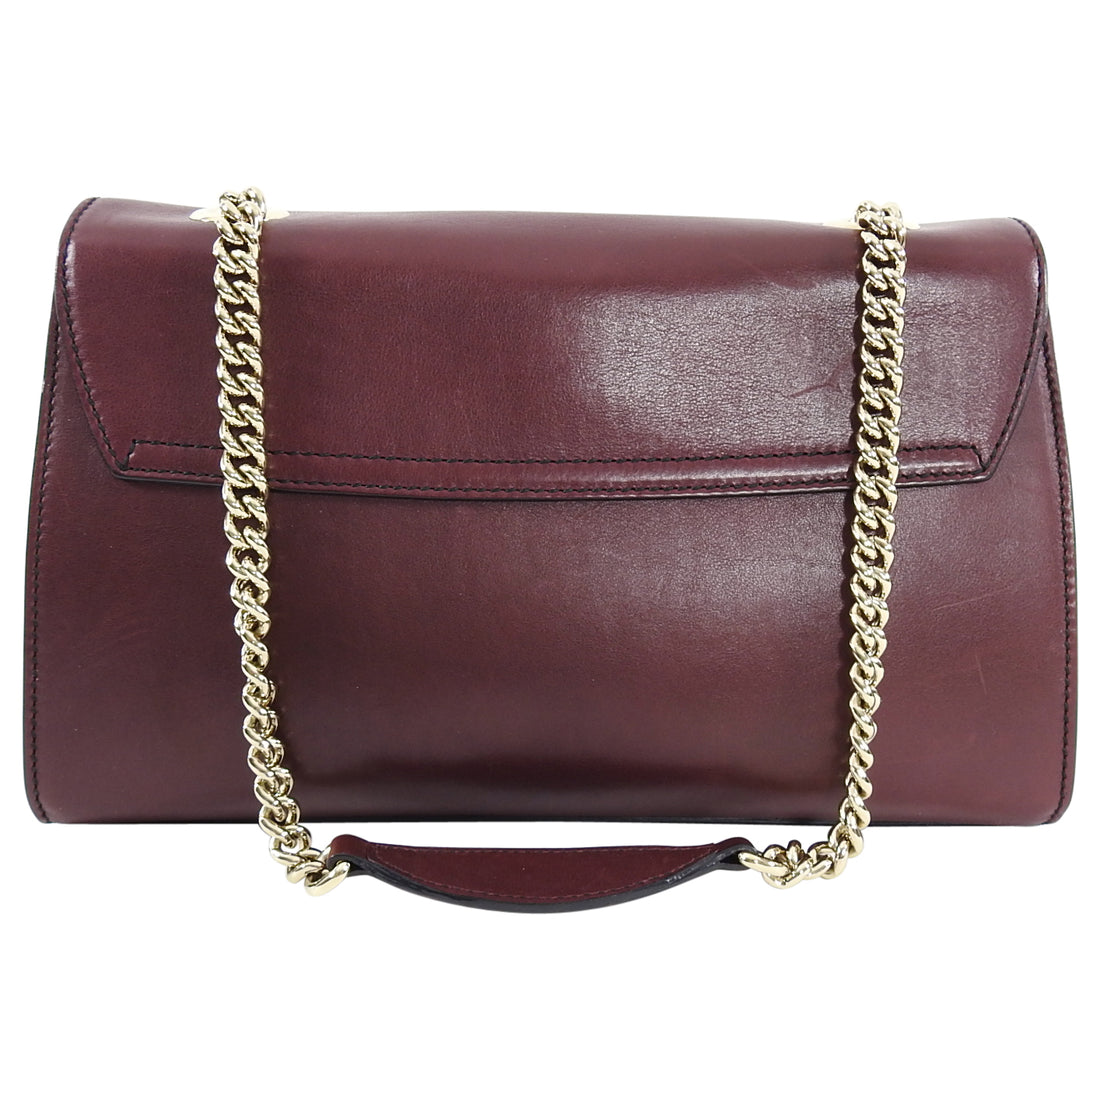 Gucci Burgundy Smooth Leather Emily Shoulder Bag – I MISS YOU VINTAGE